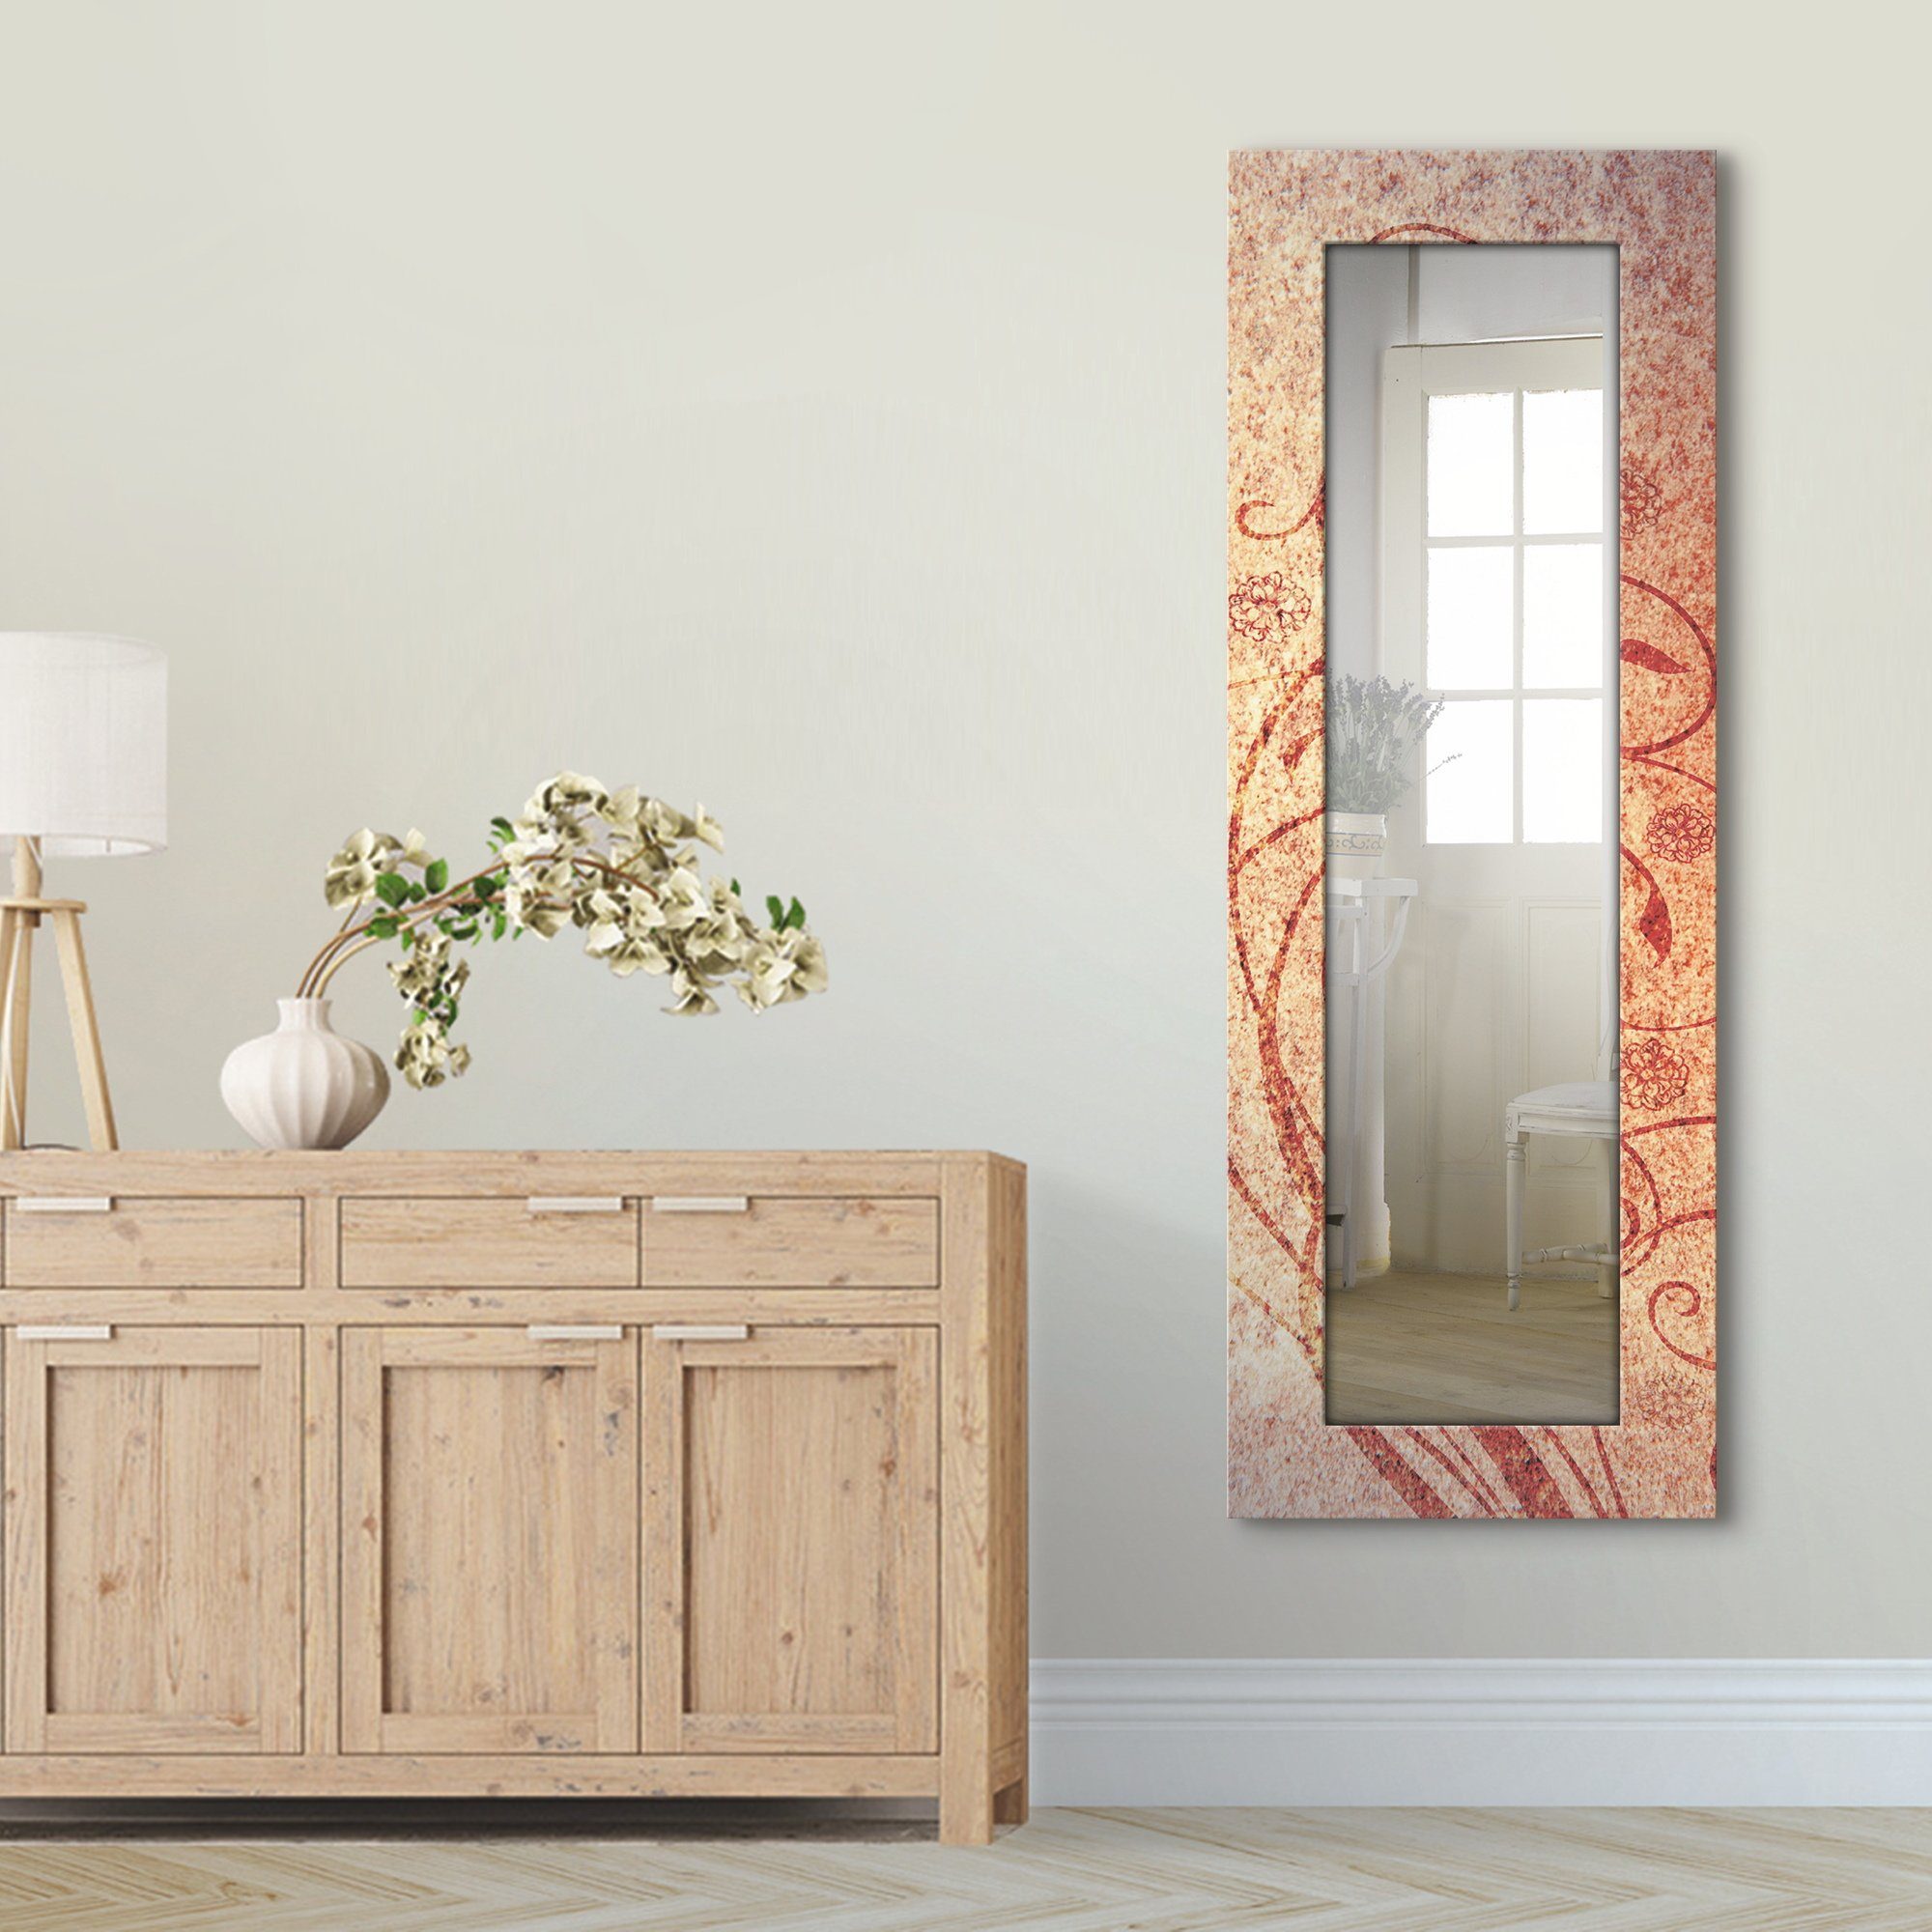 Artland Dekospiegel Florale Ornamente, gerahmter Wandspiegel, Ganzkörperspiegel, mit Motivrahmen, Landhaus